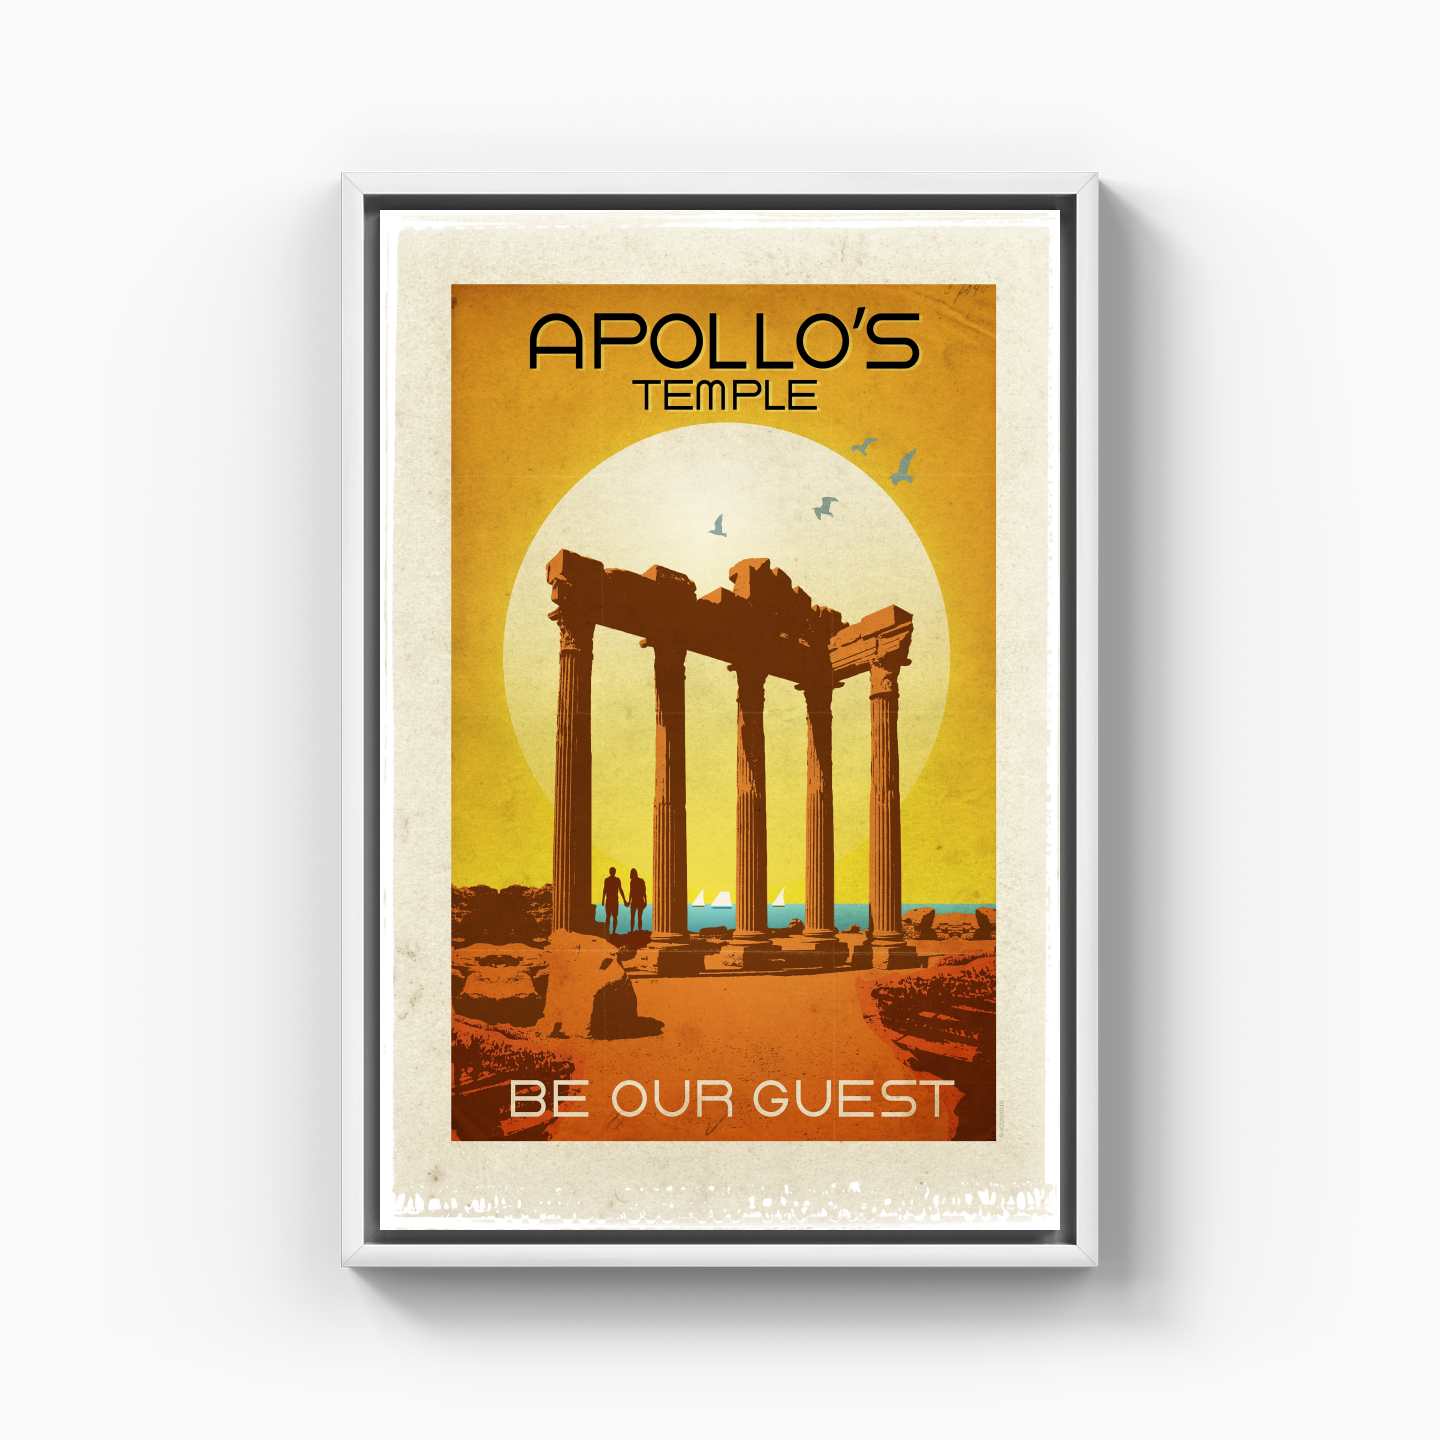 Apollon Tapınağı - Kanvas Tablo